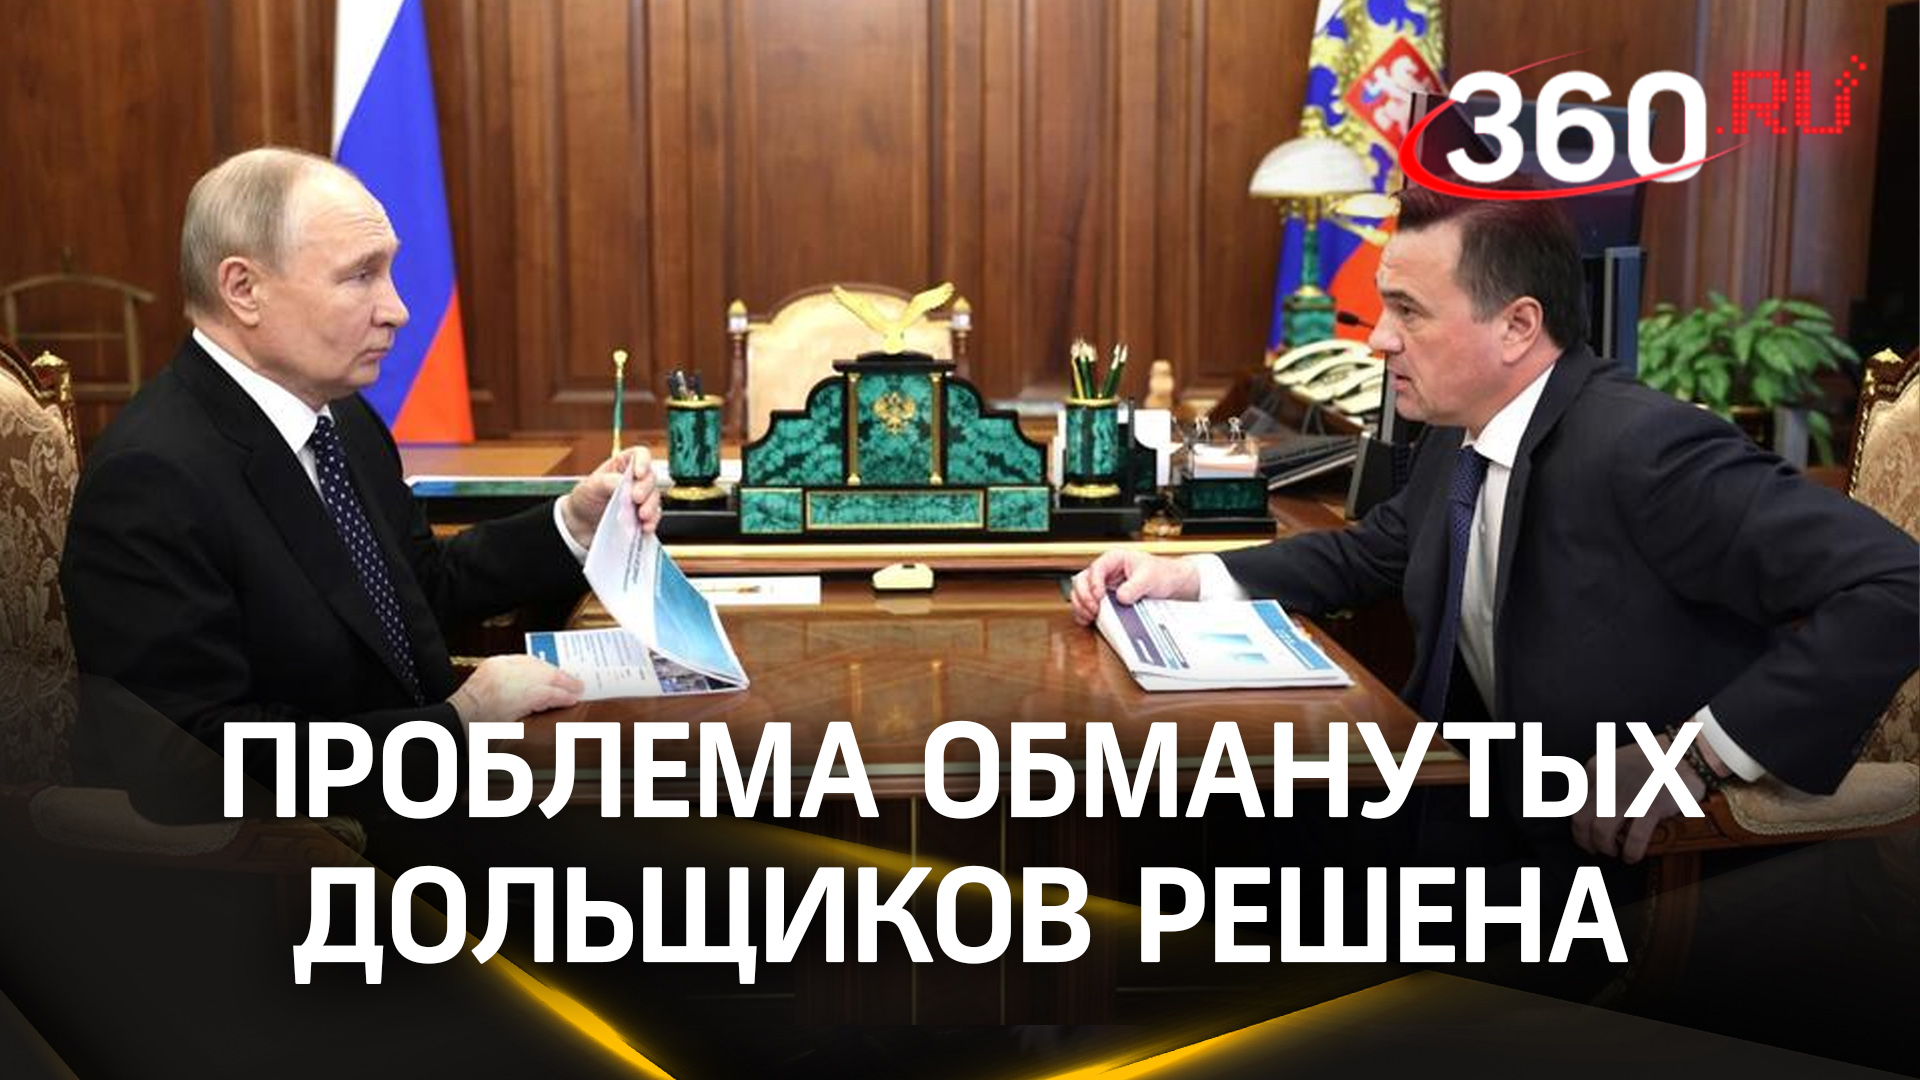 «Тему закрыли»: доклад Путину о ситуации с обманутыми дольщиками в Подмосковье